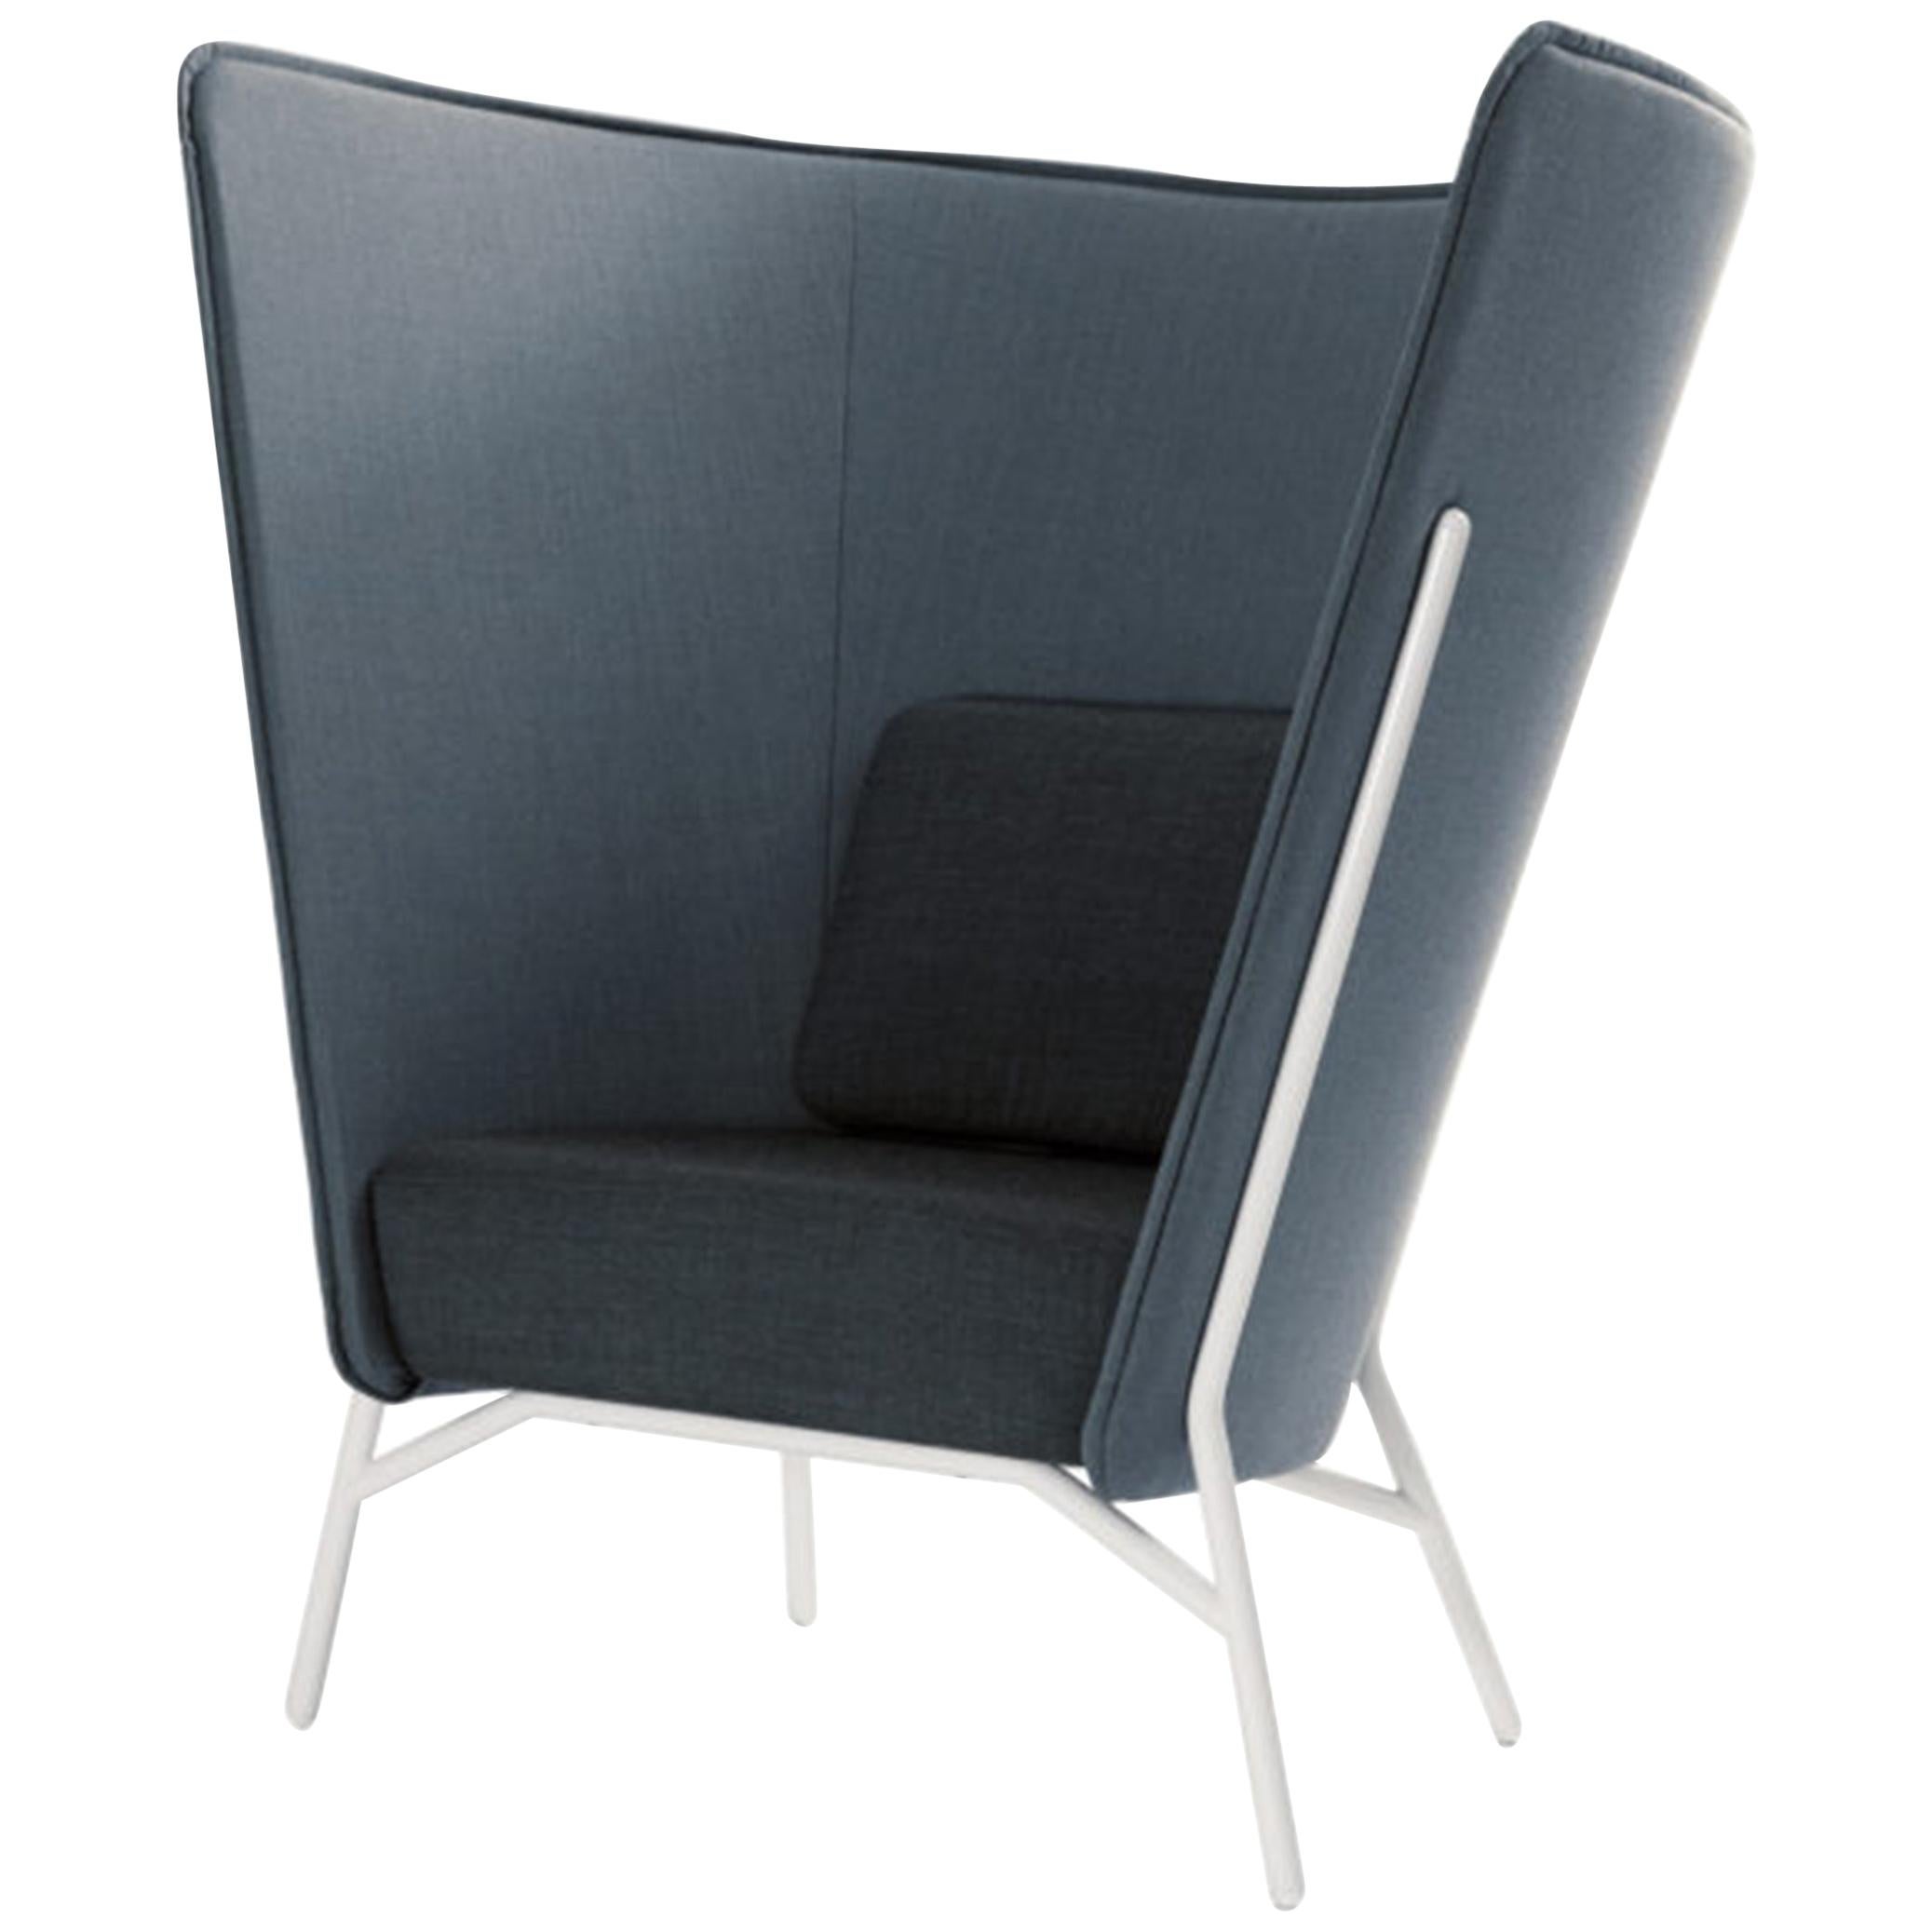 Inno Aura L High Back Chair Designed by Mikko Laakkonen